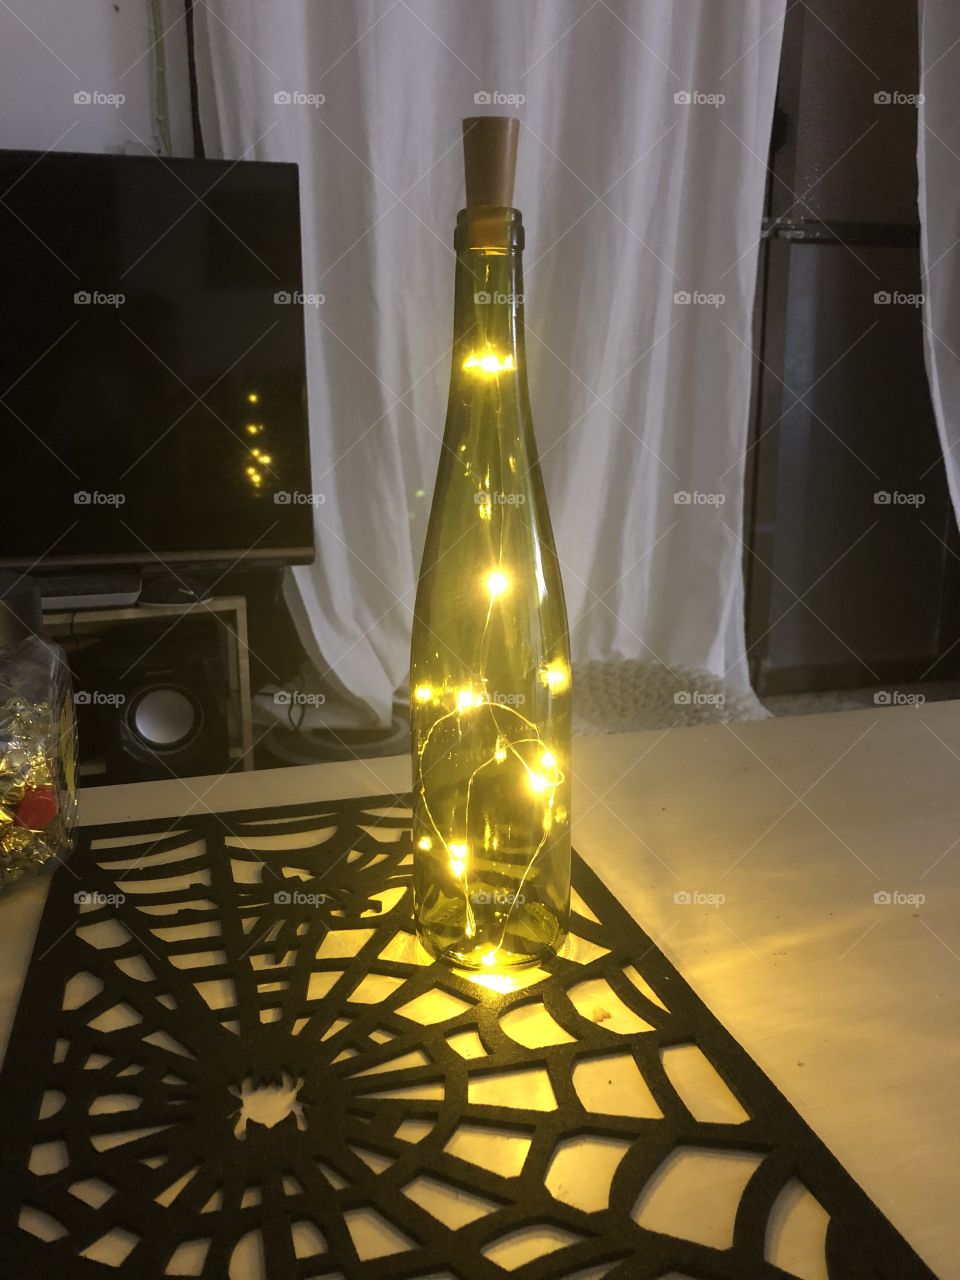 Led light wine bottle 